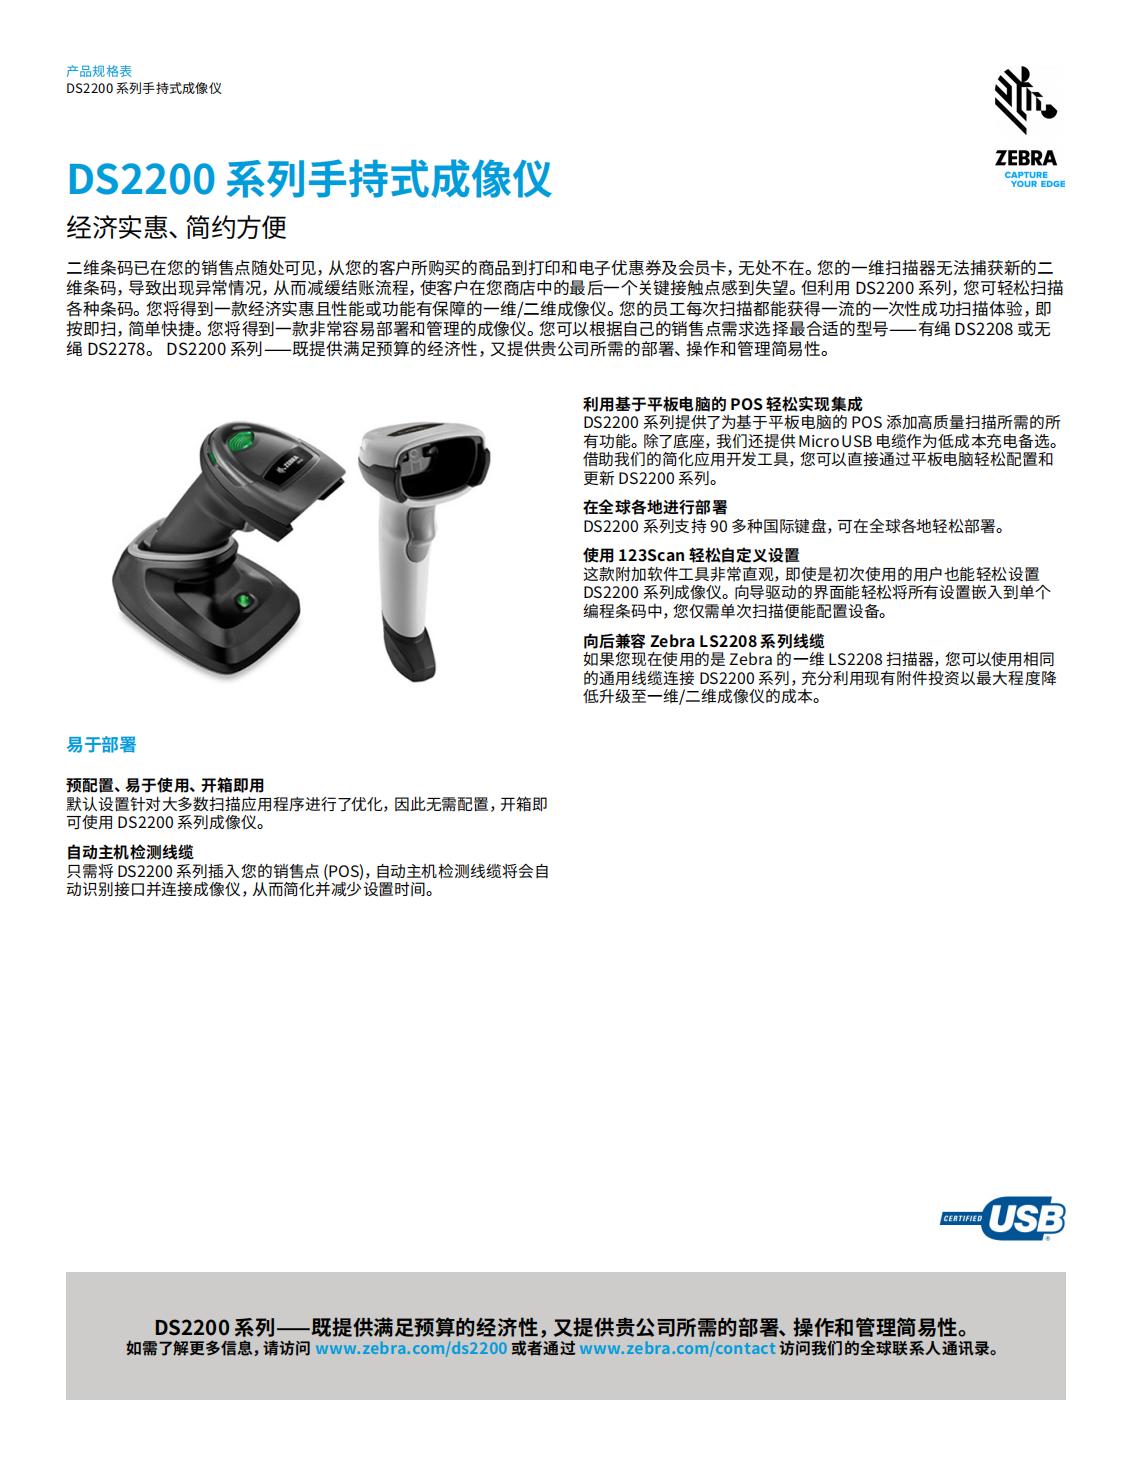 ds2200-series-spec-sheet-zh-cn_00.jpg